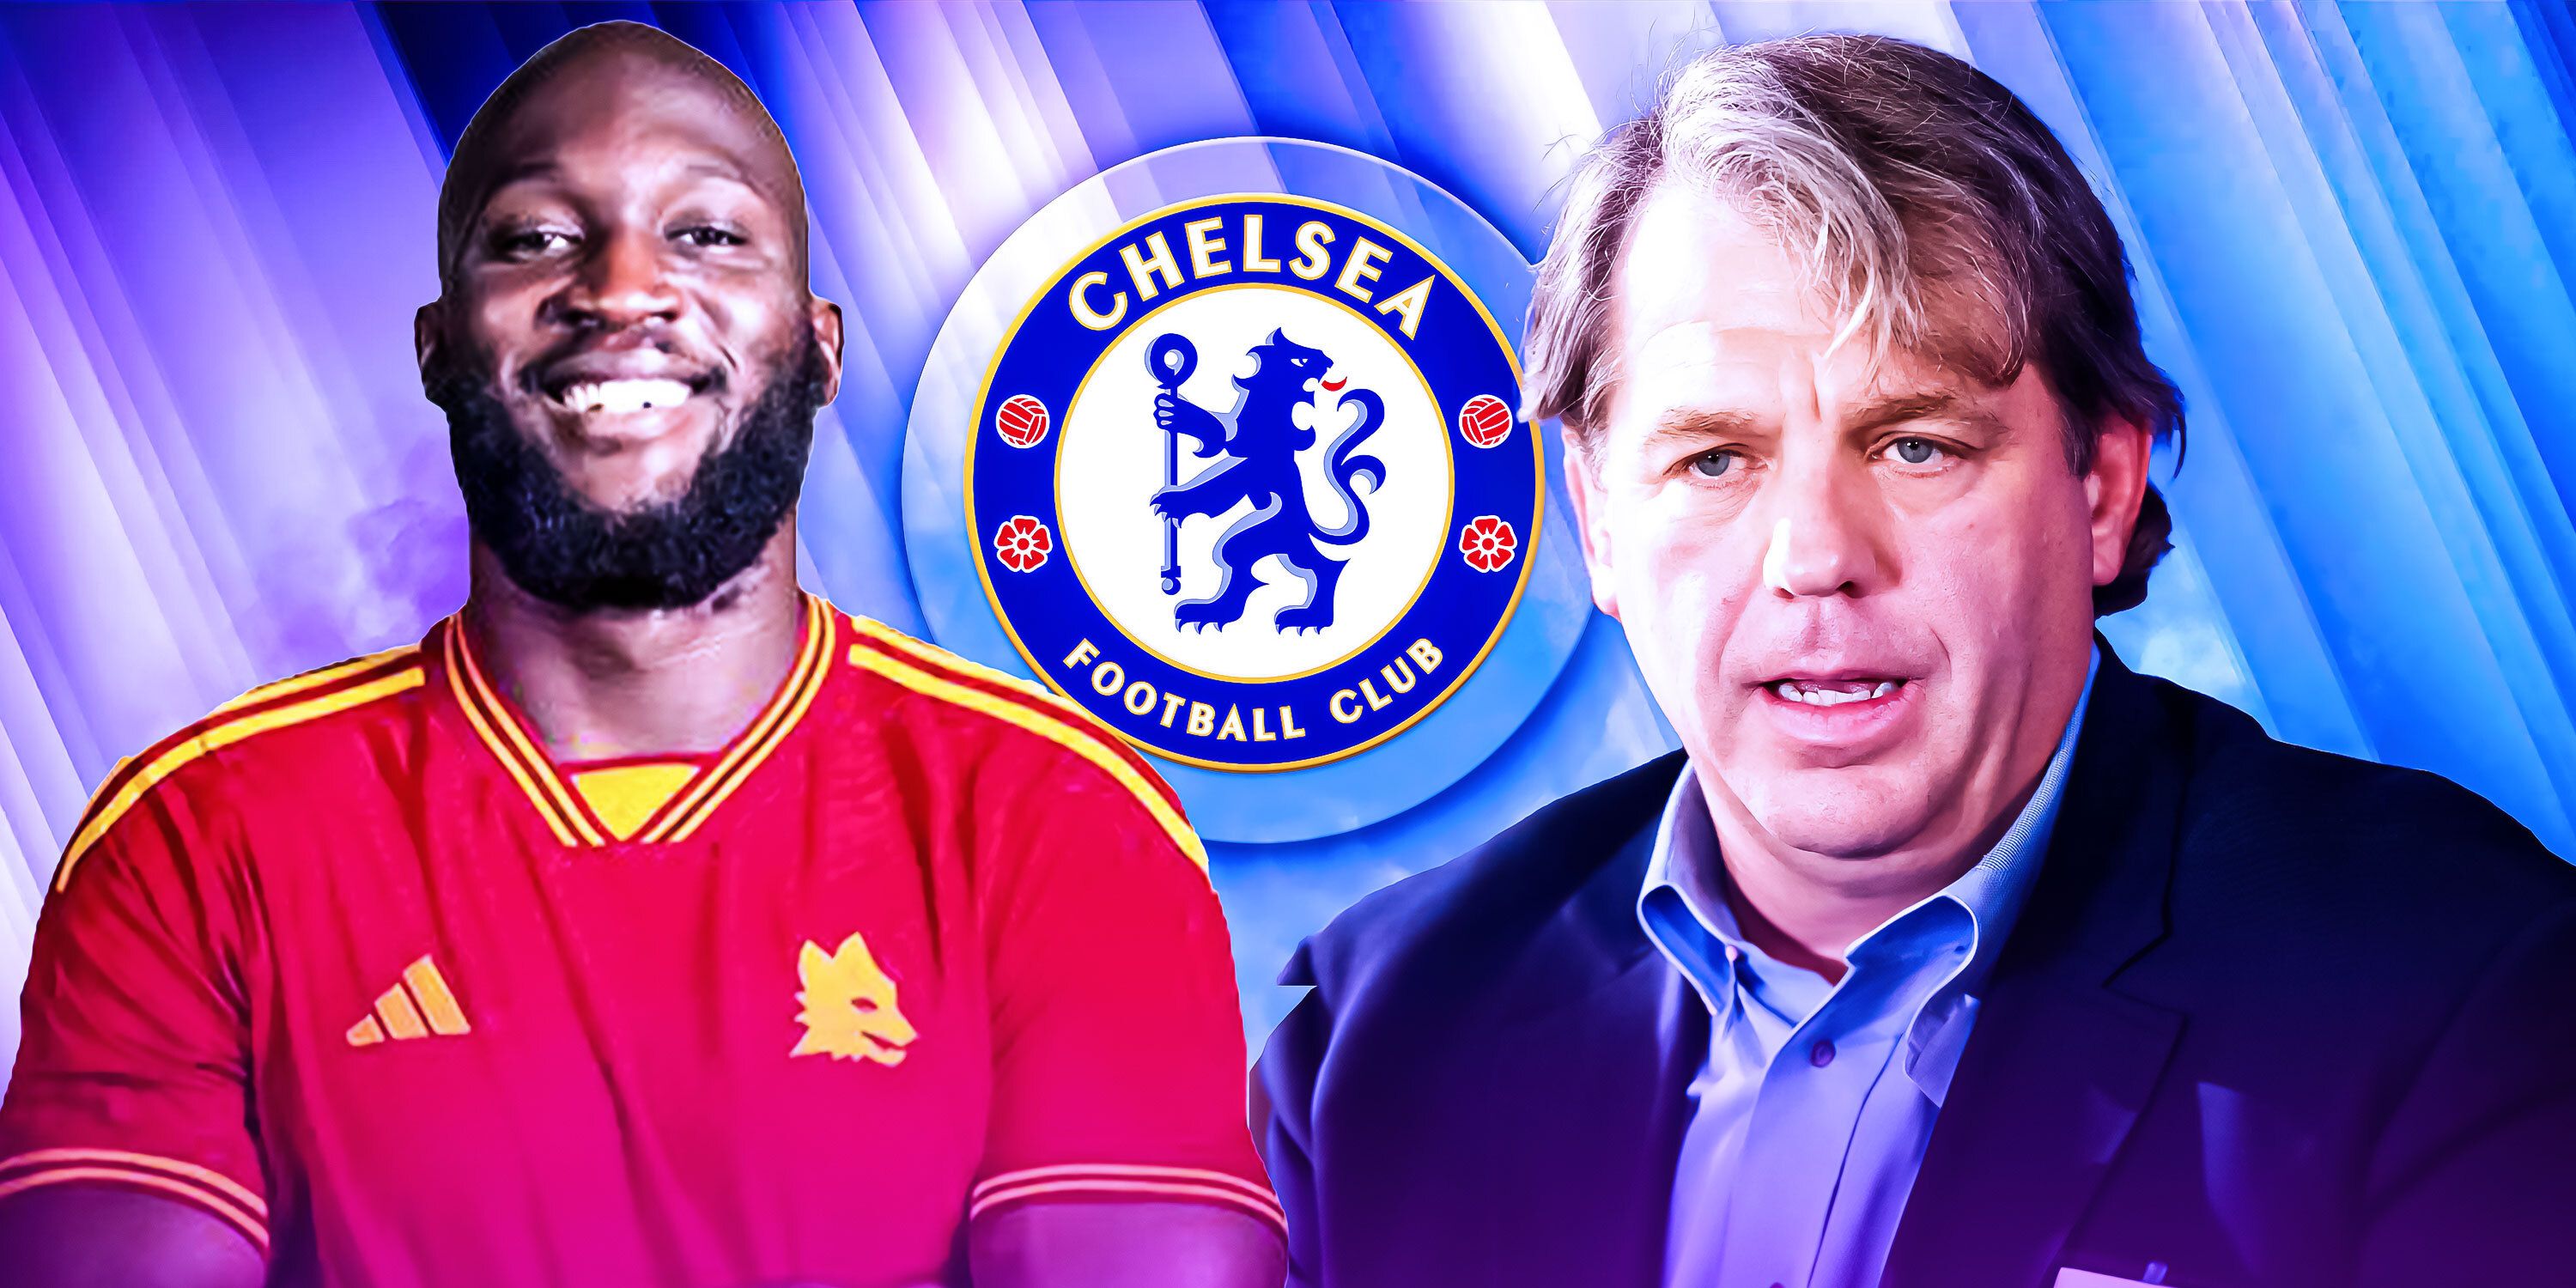 Chelsea striker Romelu Lukaku and co-owner Todd Boehly